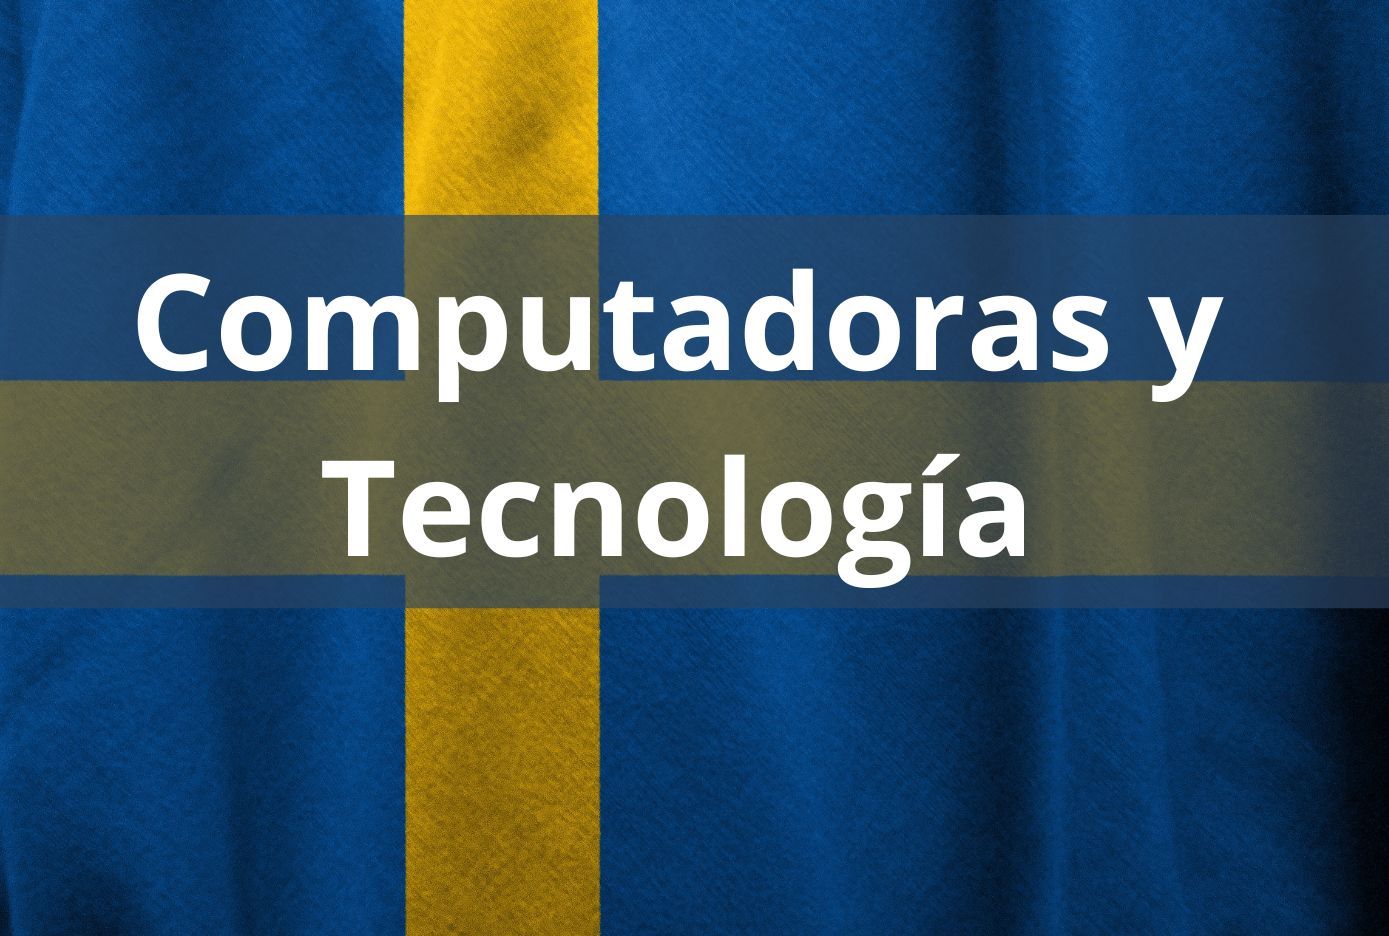 tecnologia en sueco